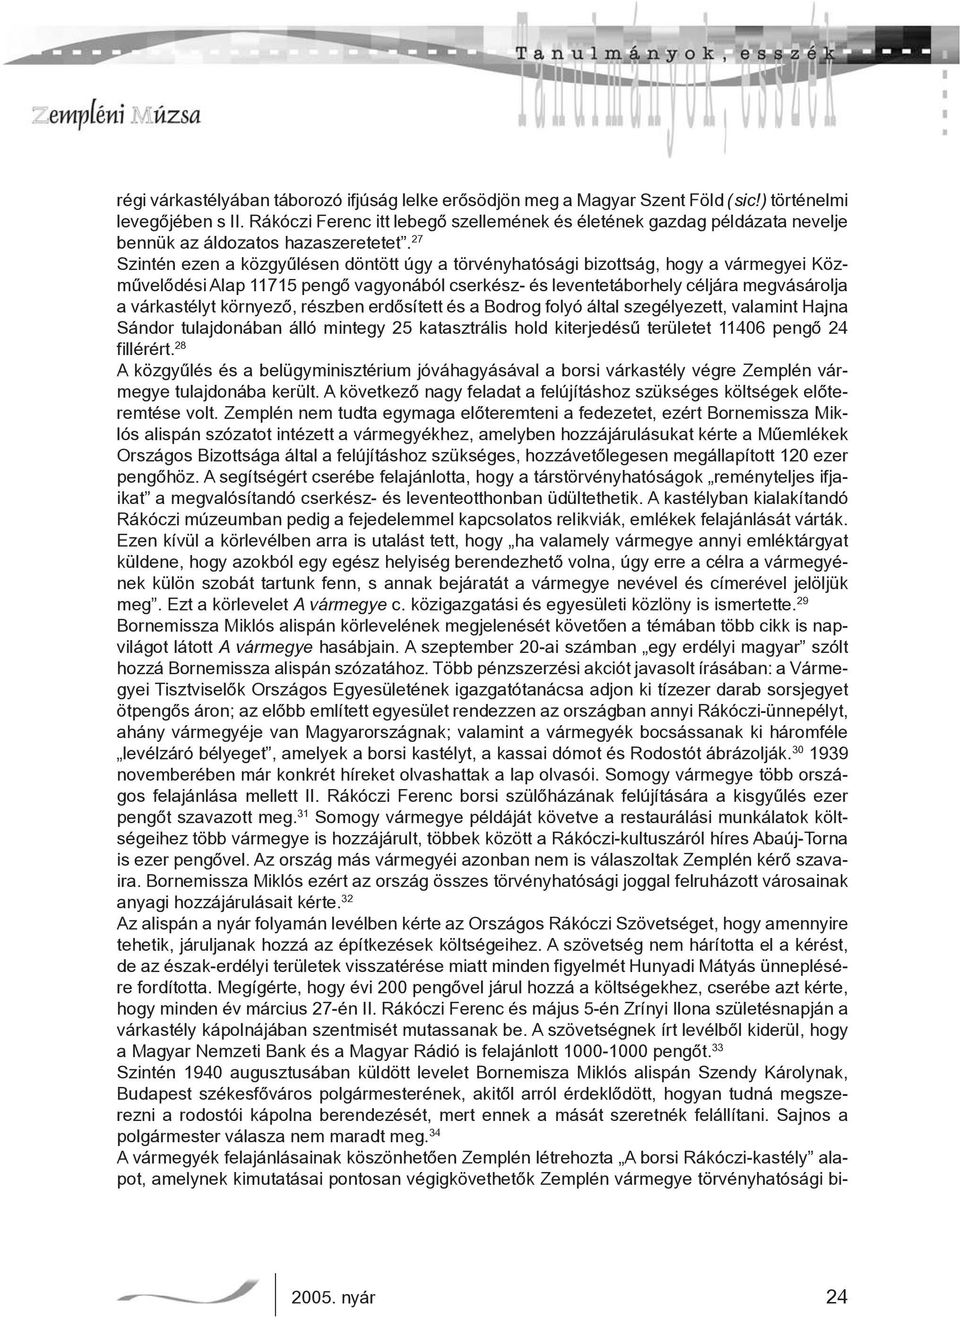 27 Szintén ezen a közgyűlésen döntött úgy a törvényhatósági bizottság, hogy a vármegyei Közművelődési Alap 11715 pengő vagyonából cserkész- és leventetáborhely céljára megvásárolja a várkastélyt